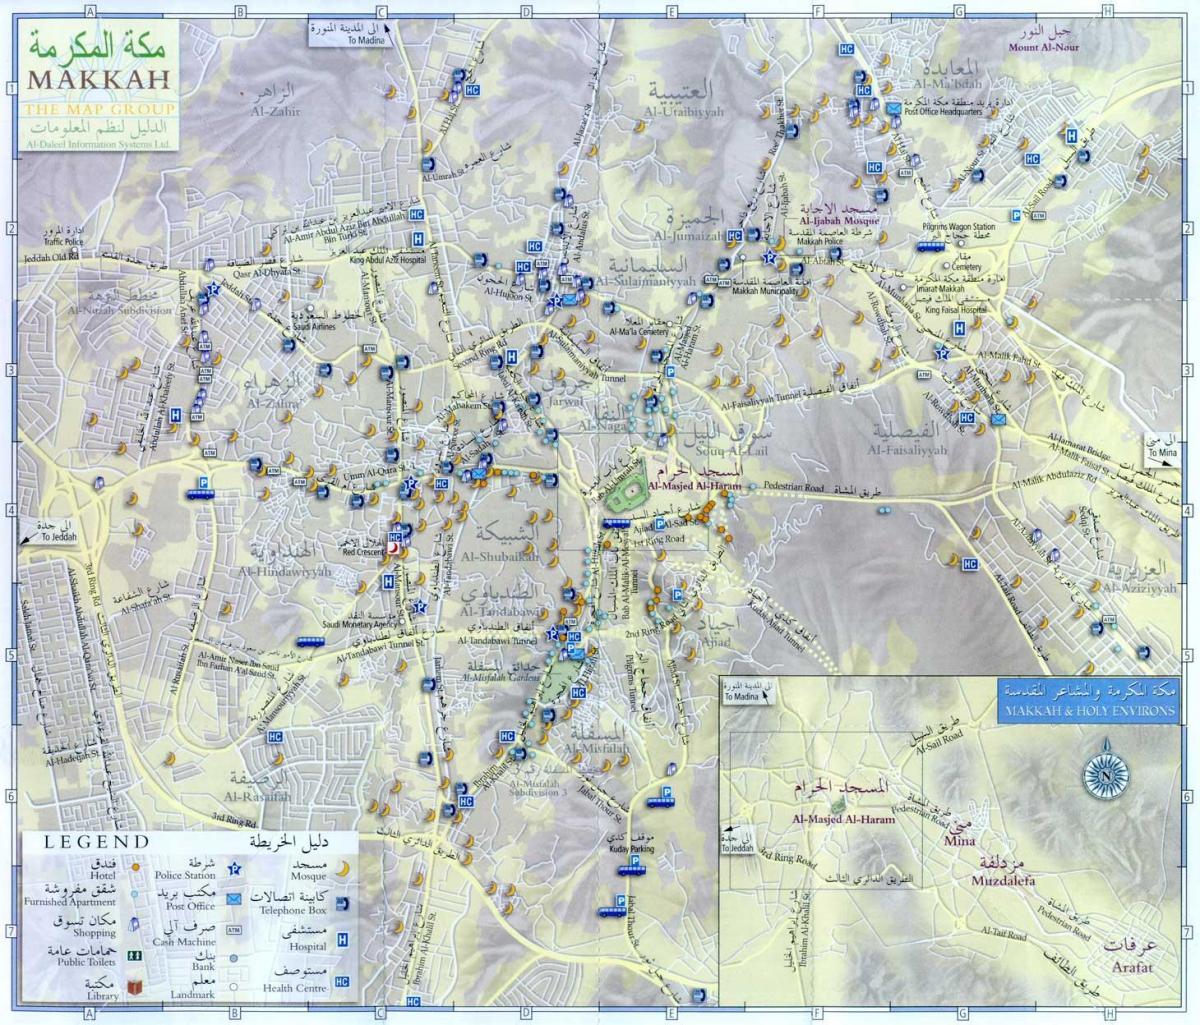  แผนที่ของ saudi_ arabia. kgm ziyarat สถานที่